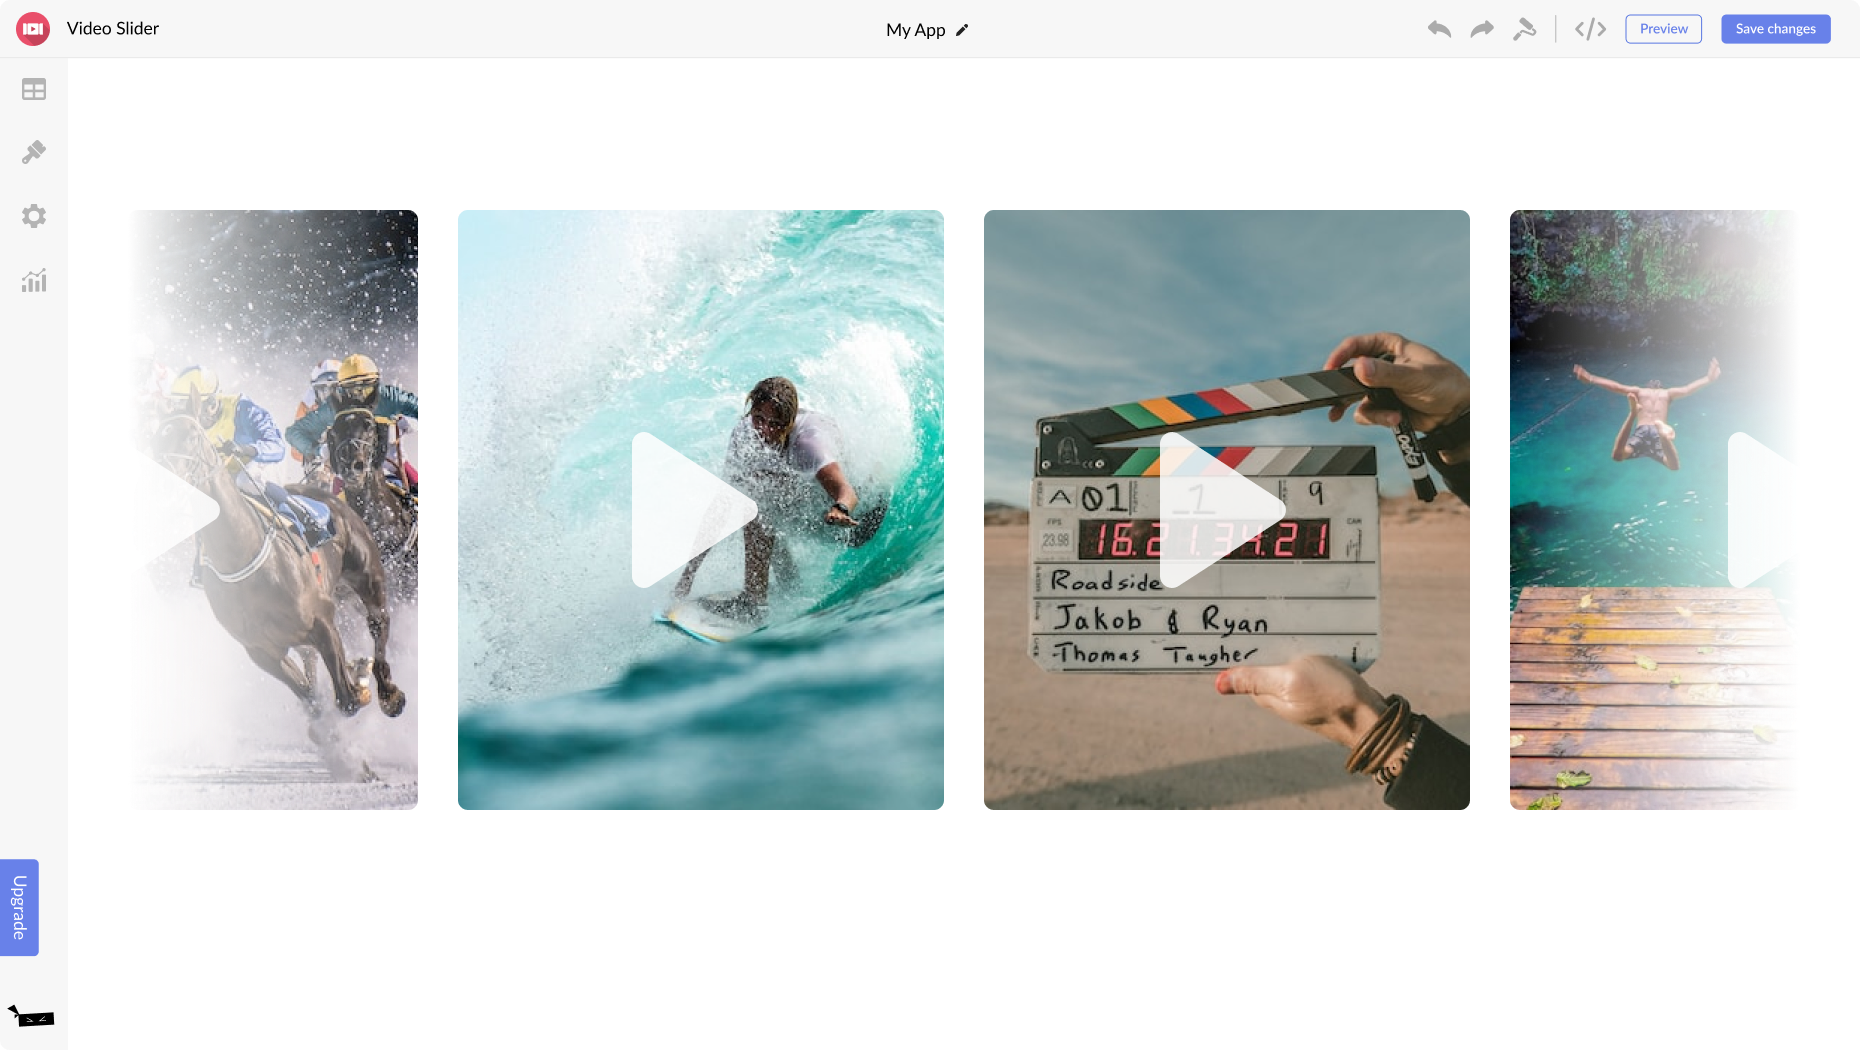 Video Slider for Instamojo